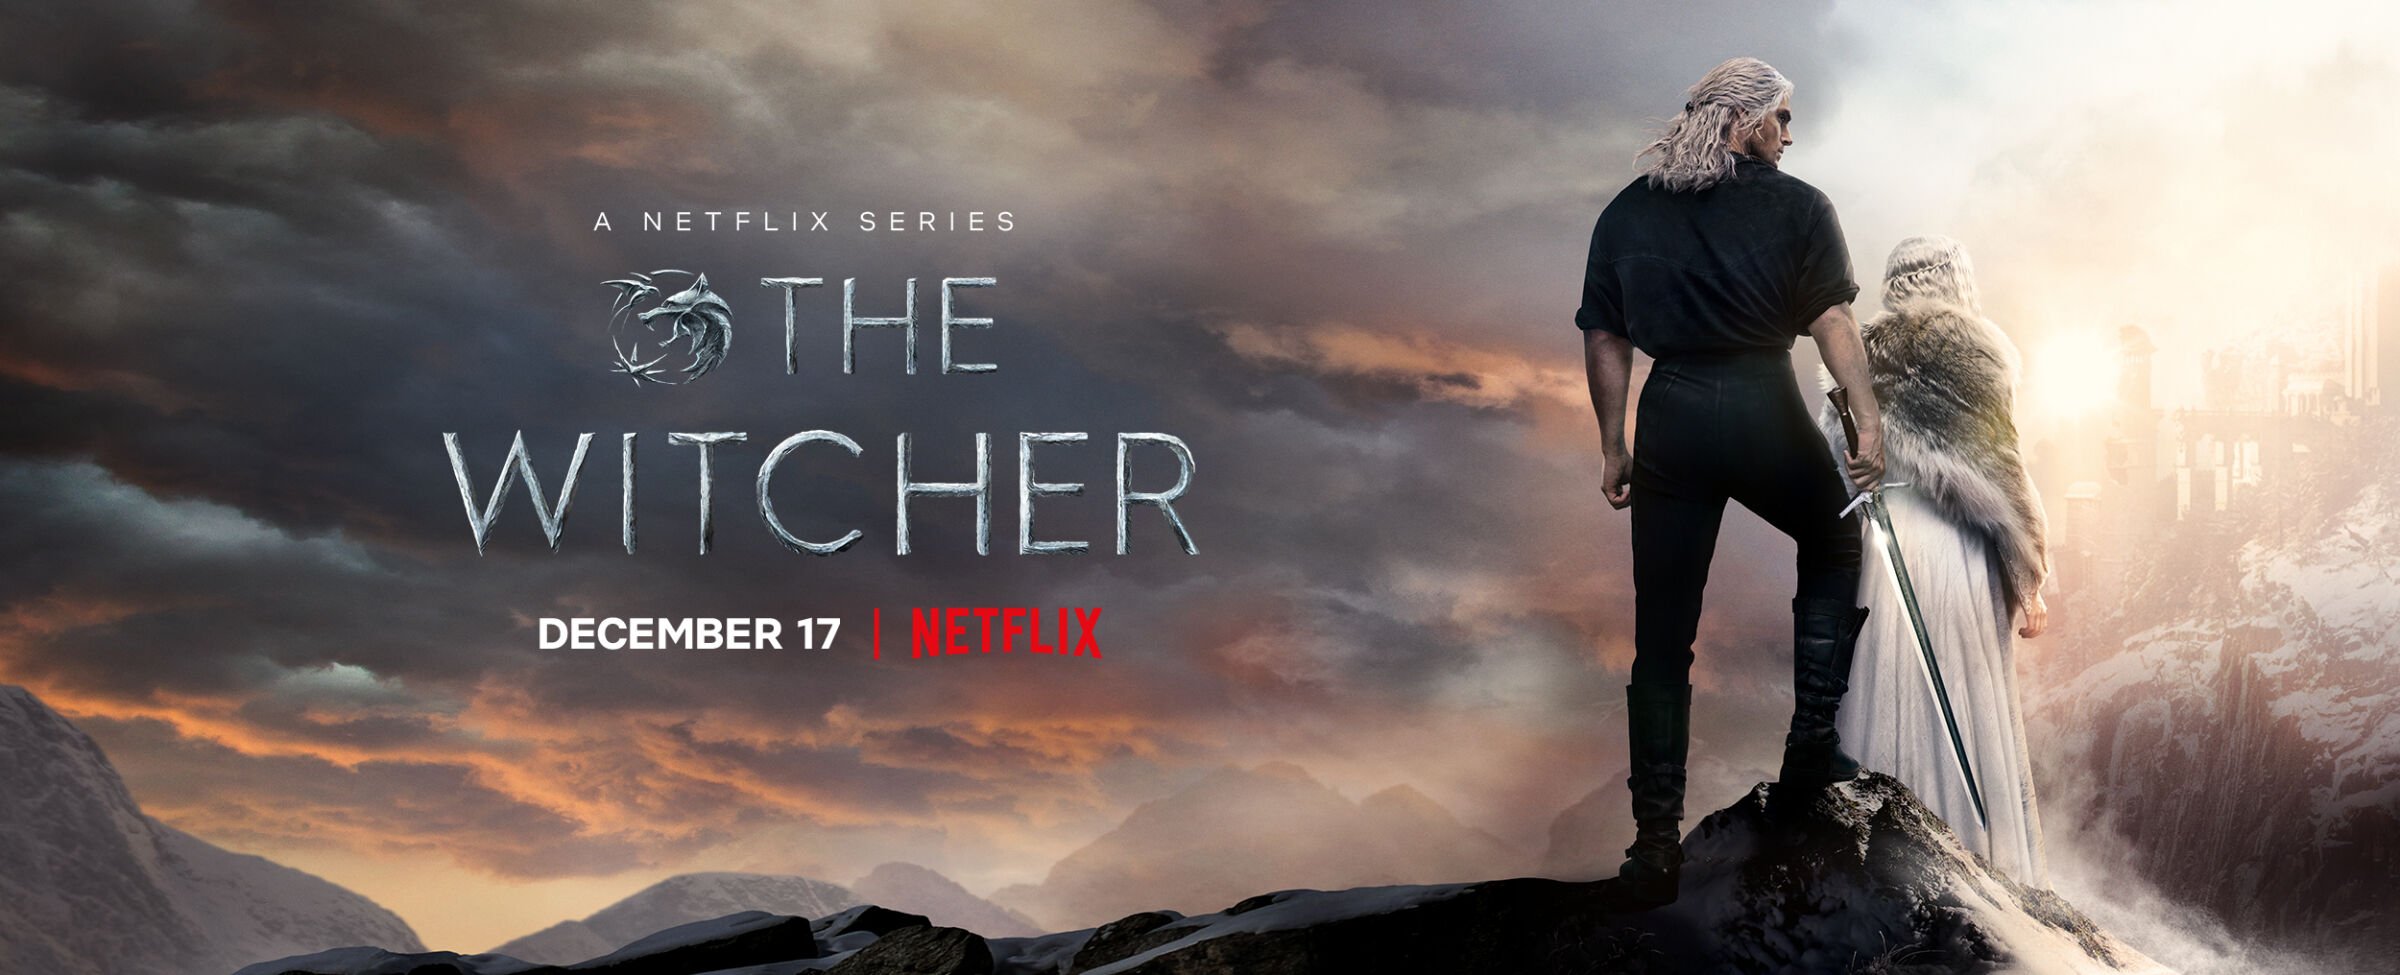 ดูซีรี่ย์ The Witcher (2021) เดอะ วิทเชอร์ นักล่าจอมอสูร 